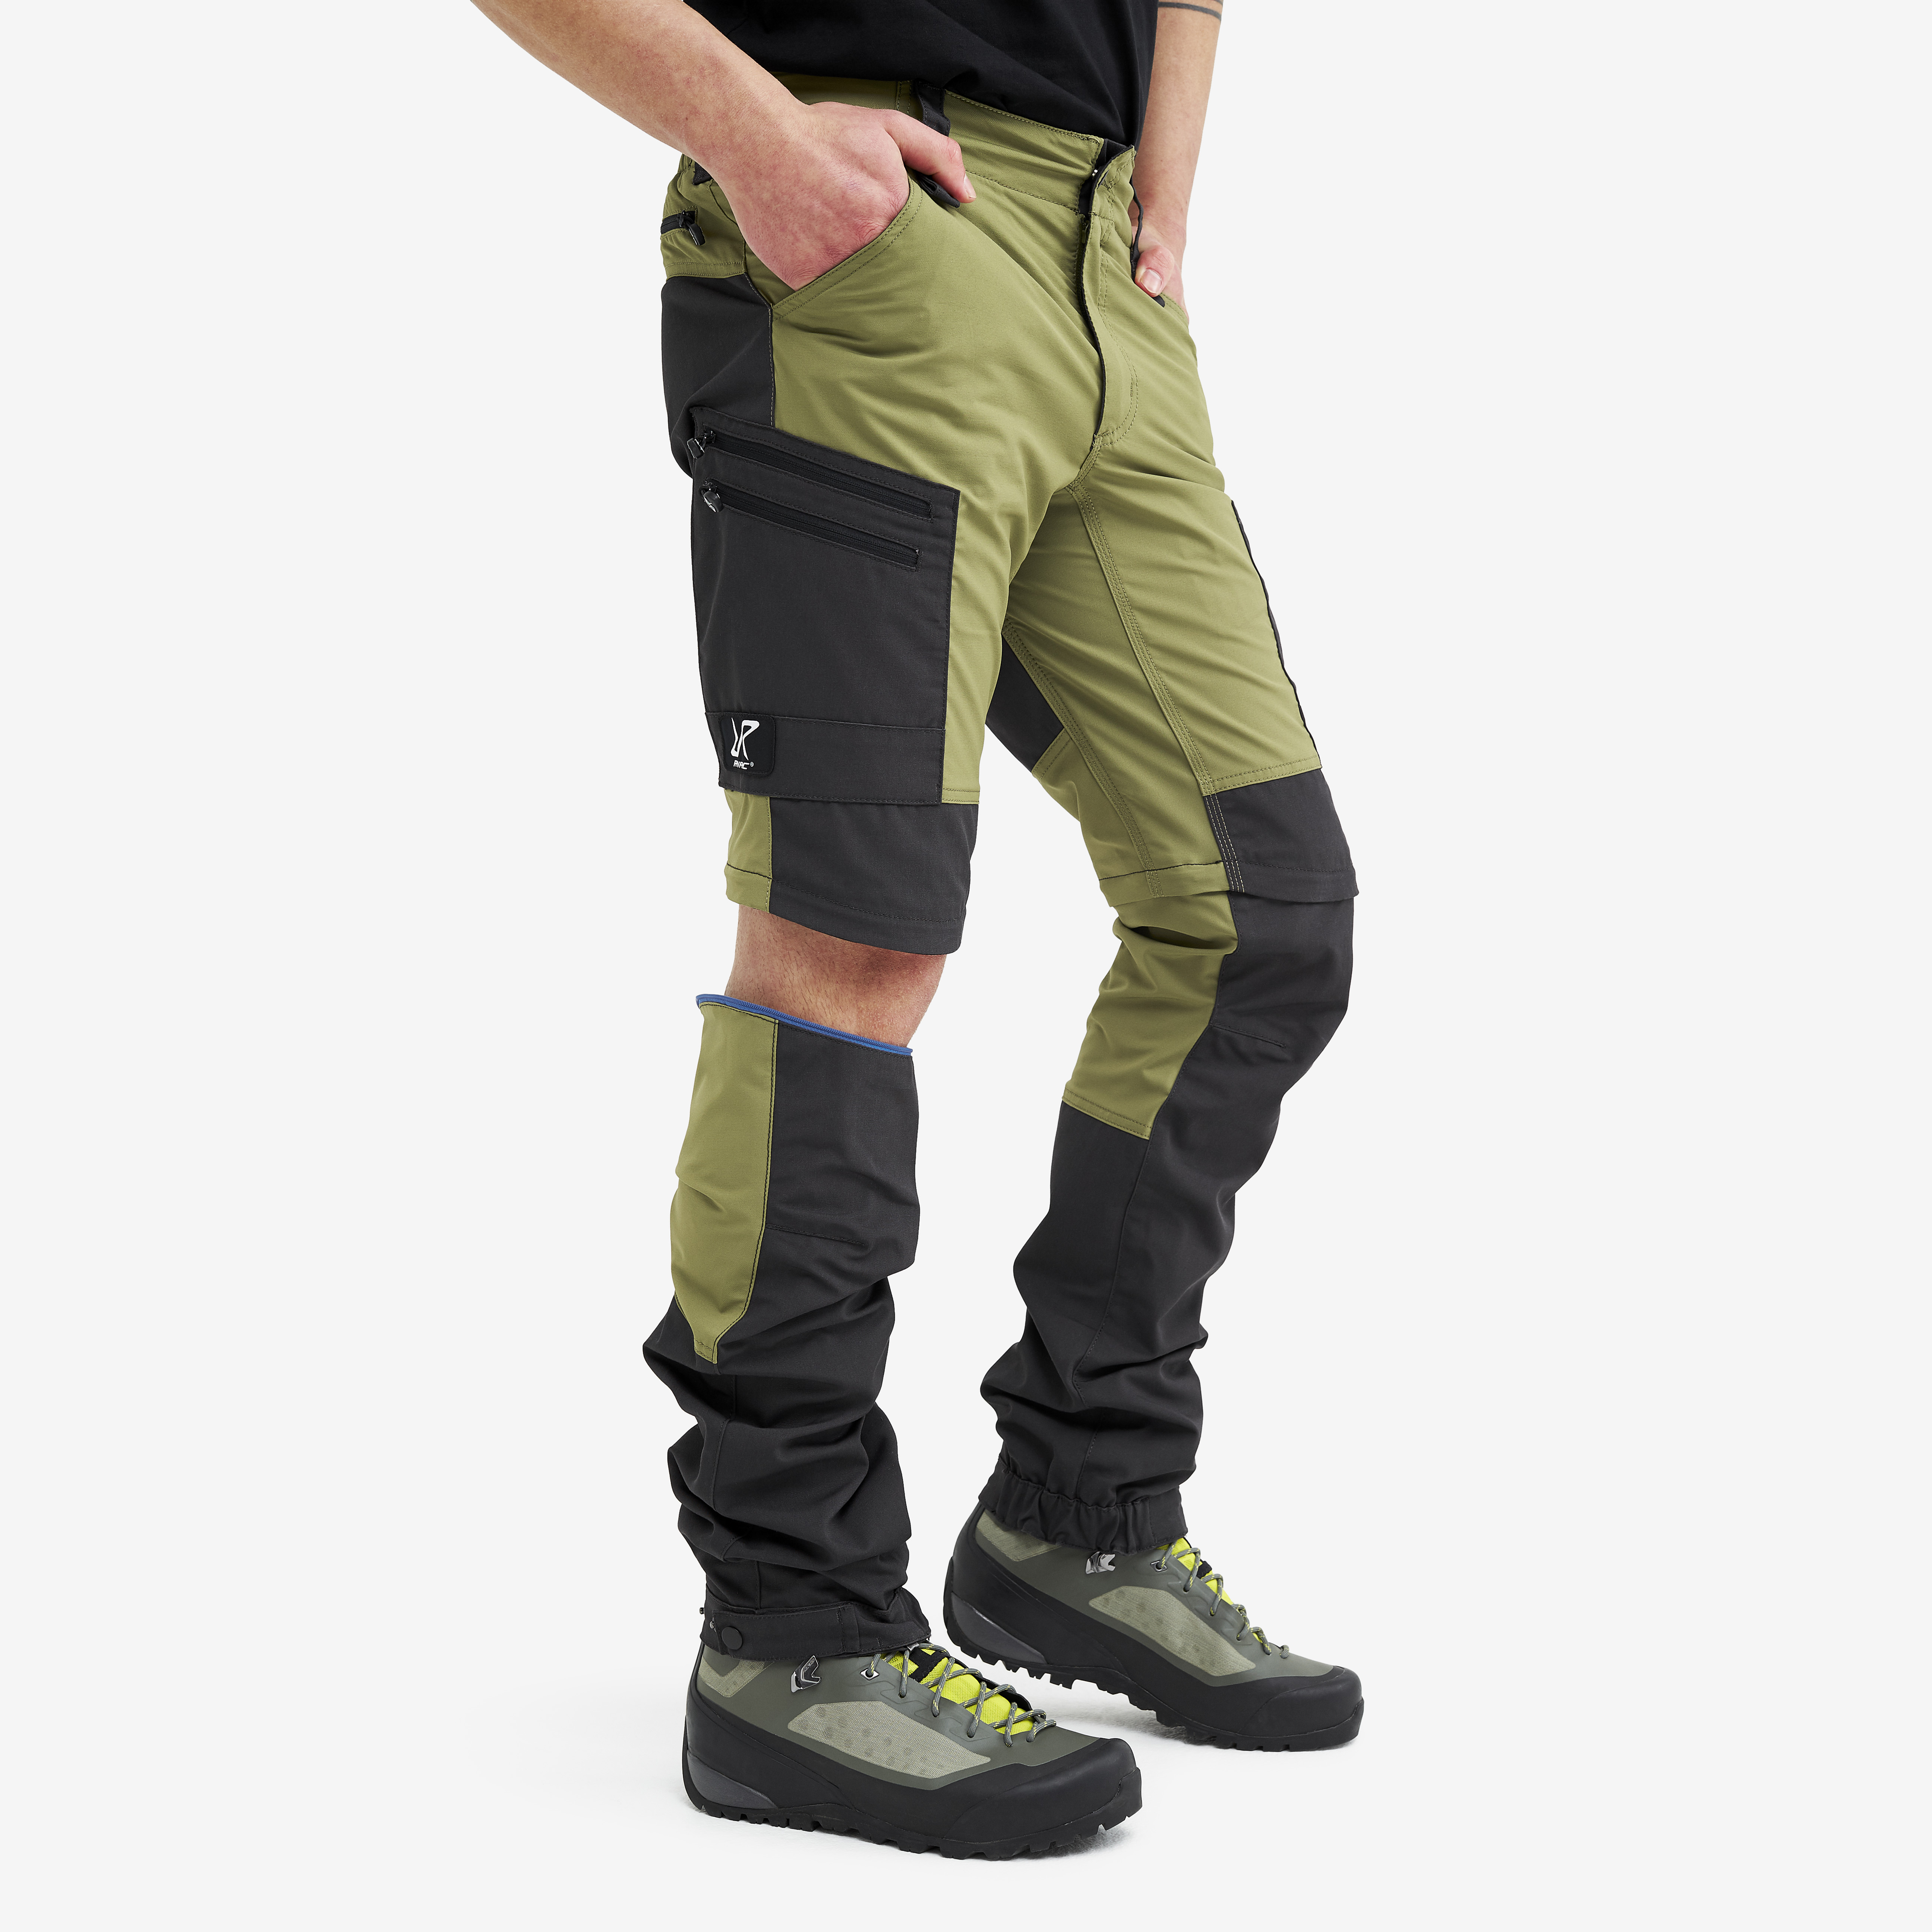 RVRC GP Pro Zip-off hiking pants for men in green